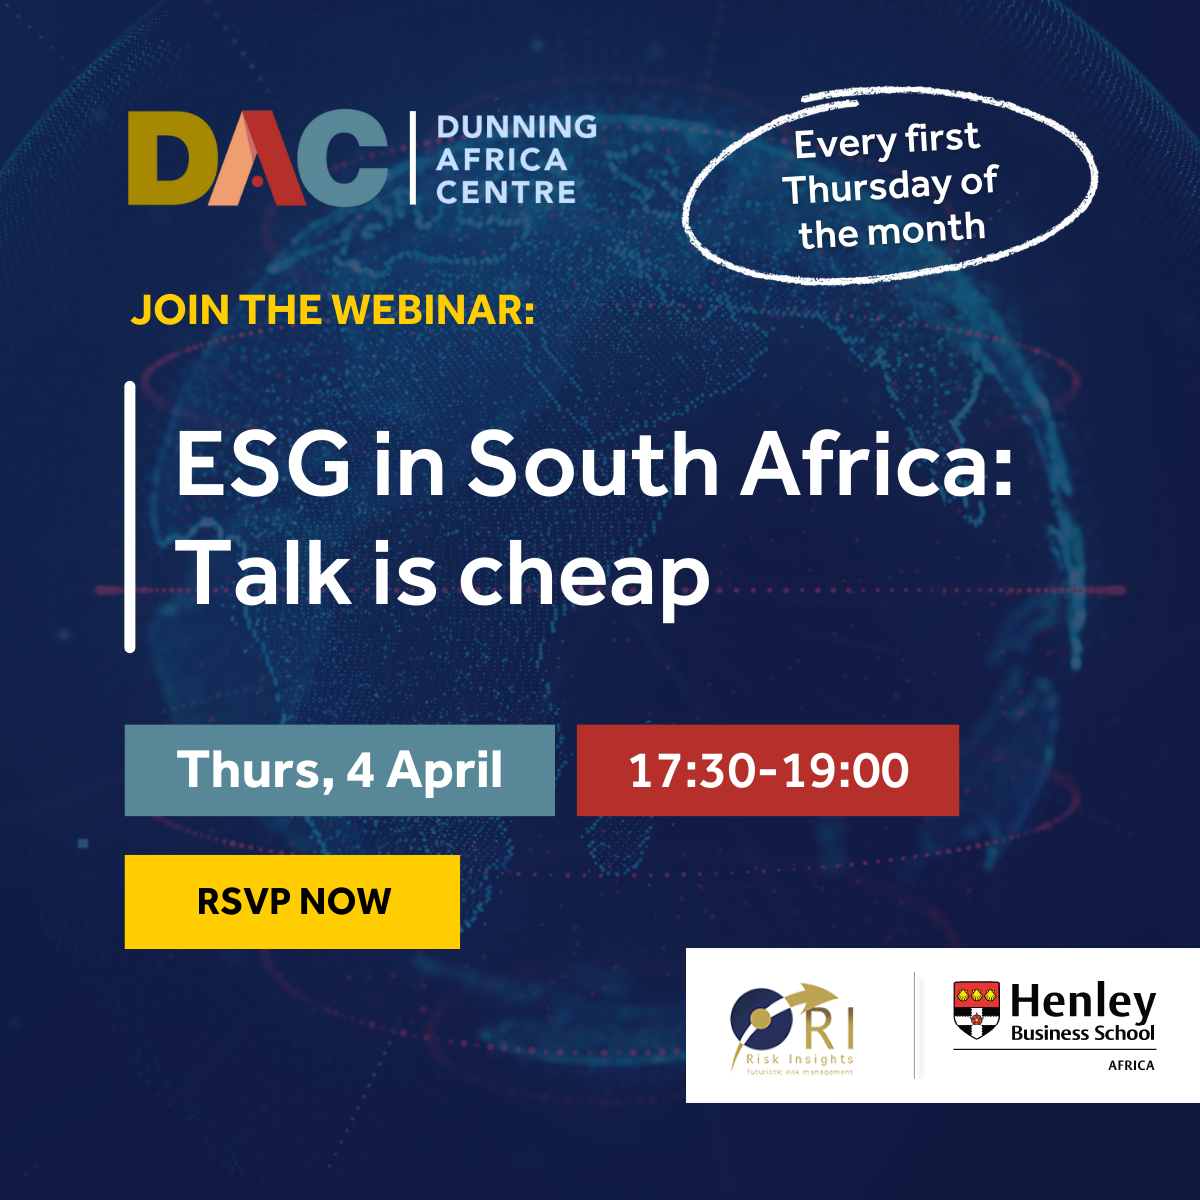 DAC_ESG in South Africa: Talk is cheap